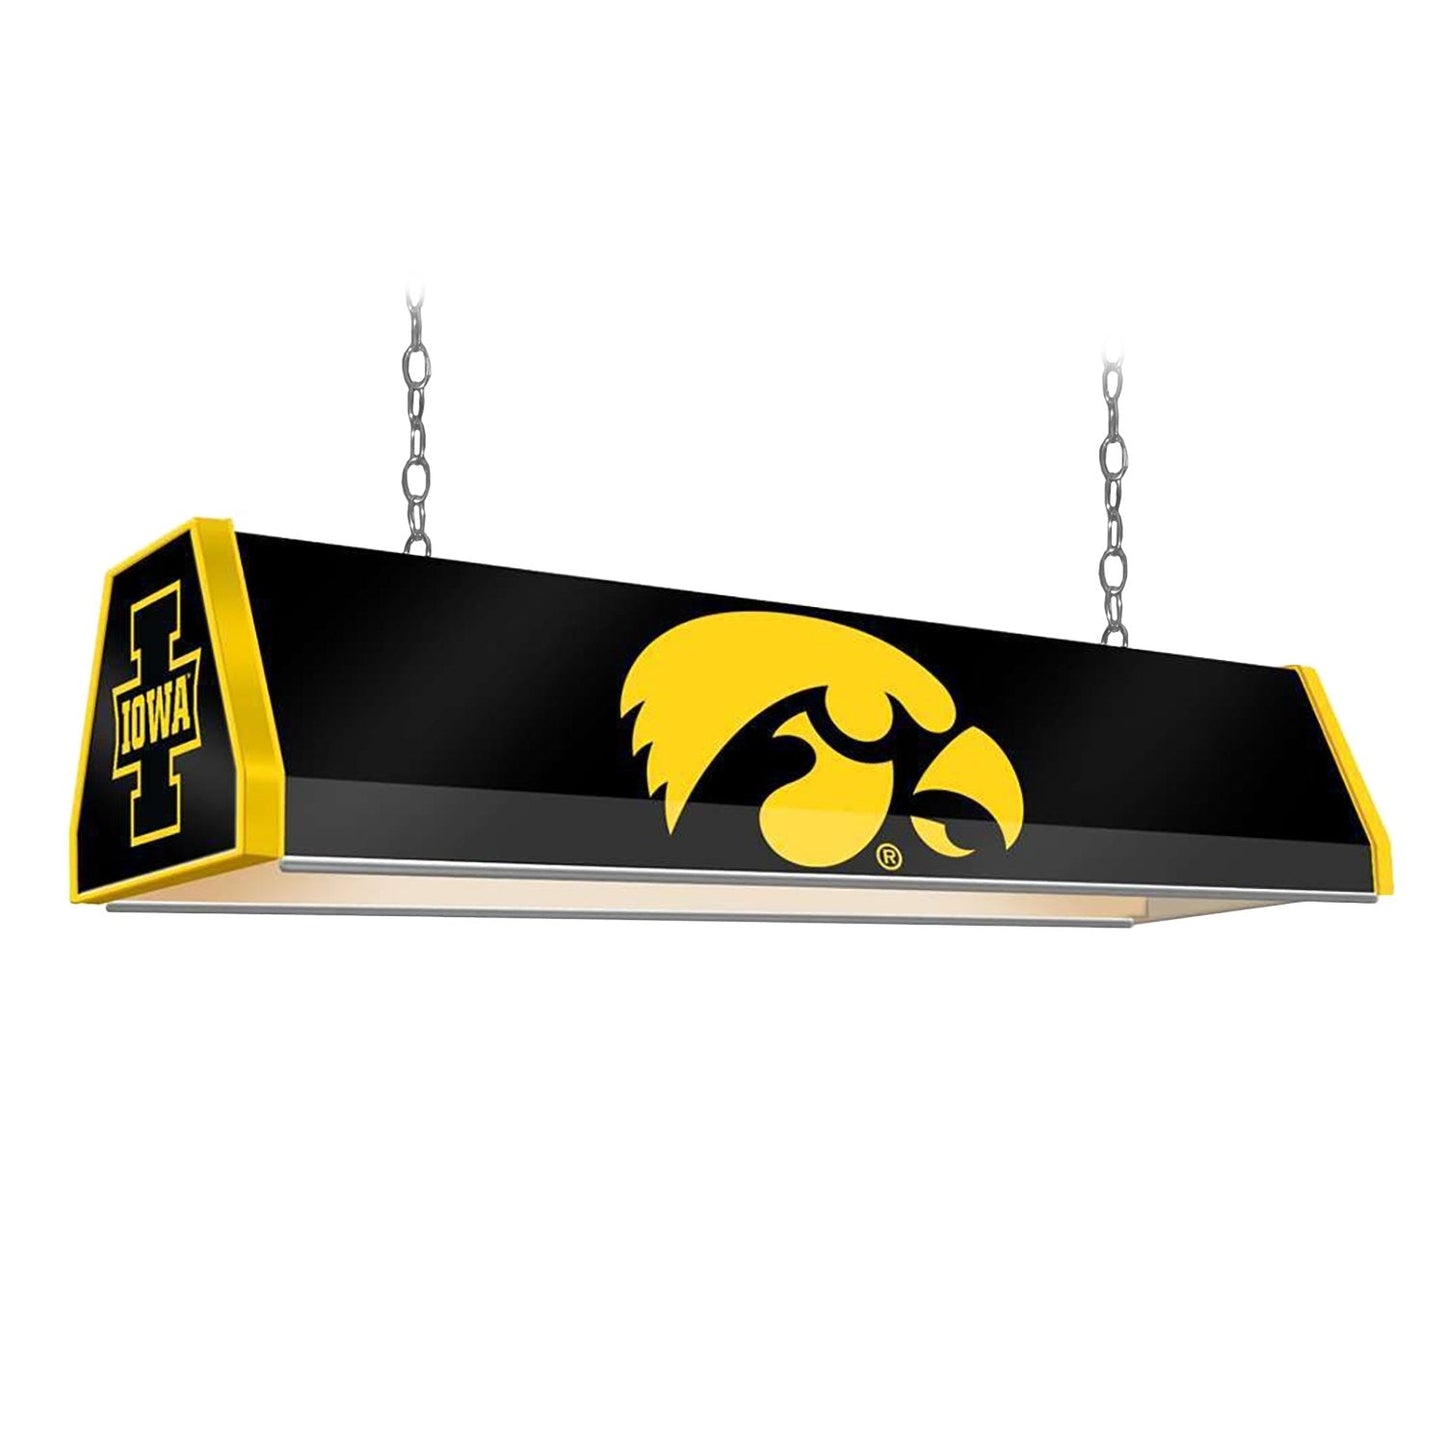 Iowa Hawkeyes: Standard Pool Table Light - The Fan-Brand